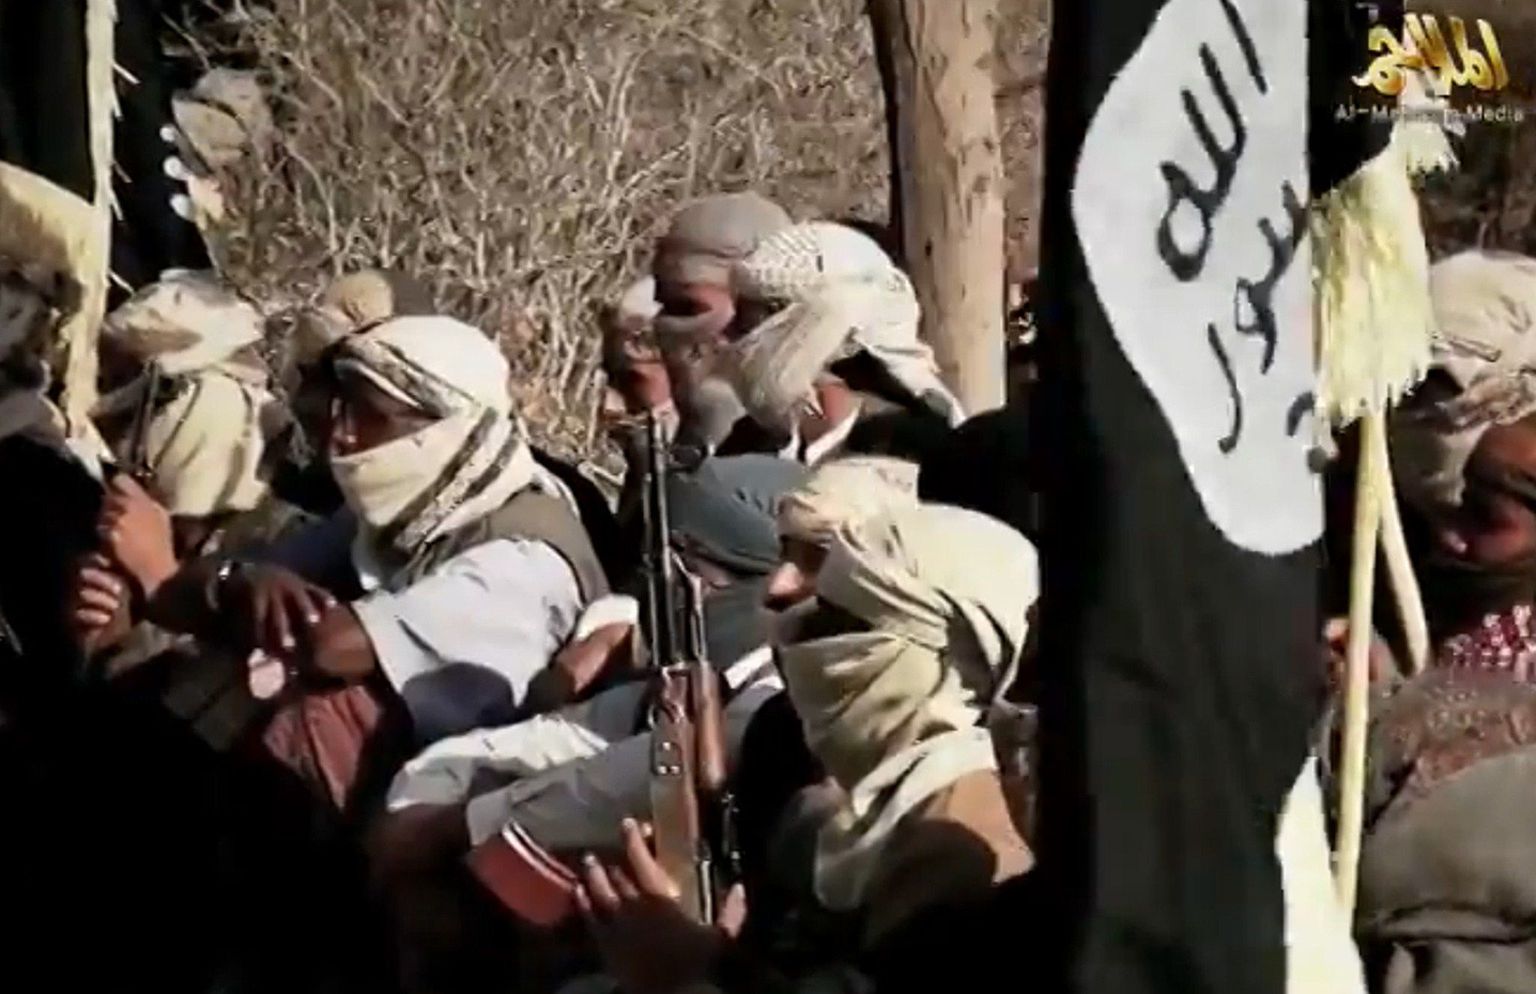 Araabia Poolsaare Al-Qaeda võitlejad 2014. aastal kuulamas oma juhi Nasser al-Wuhayshi kõnet. Wuhayshi sai surma möödunud suvel USA droonirünnakus.